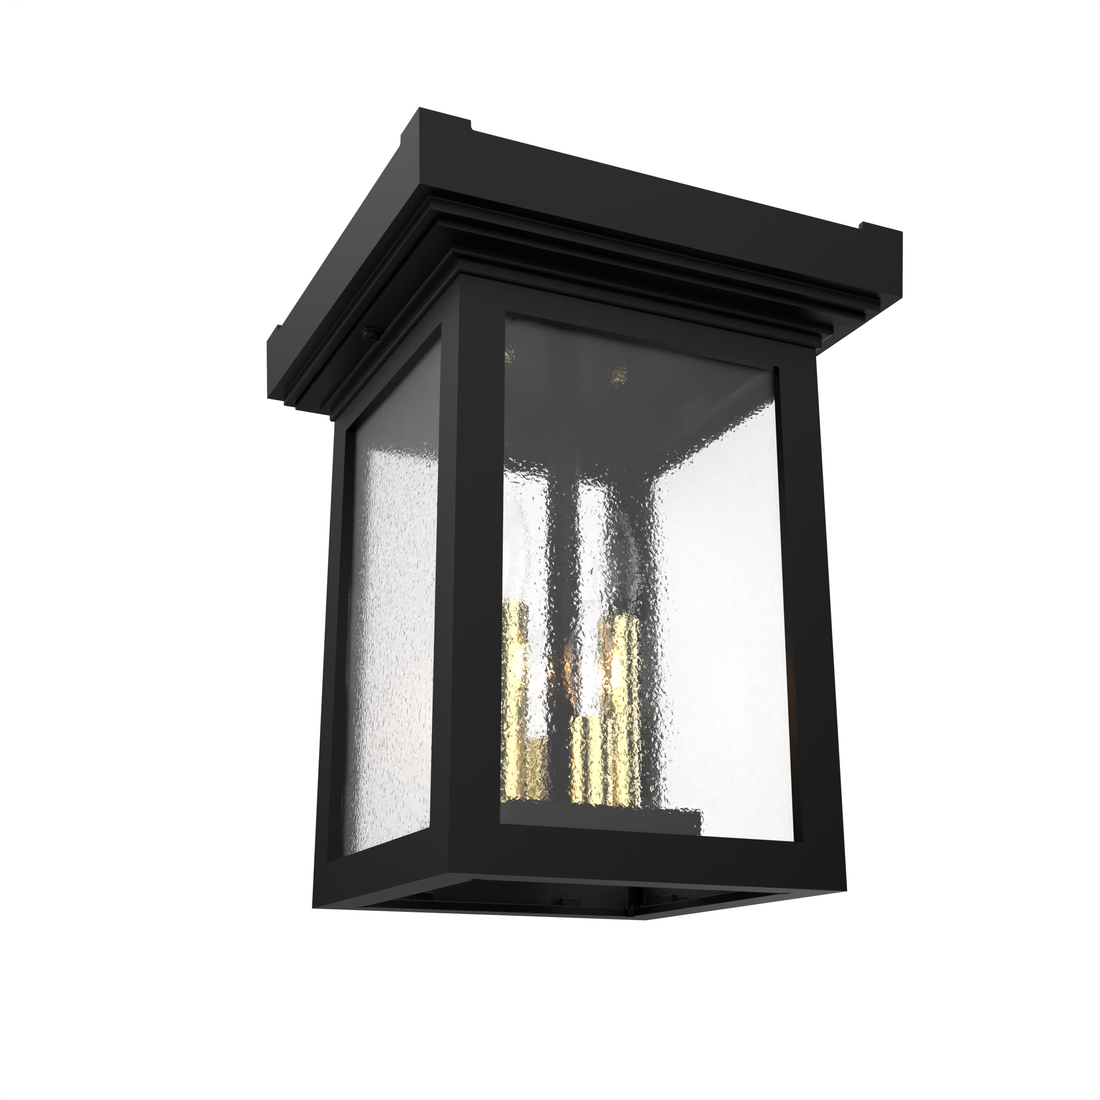 Serie 65e - Ceiling light with open bottom, medium format - 26770